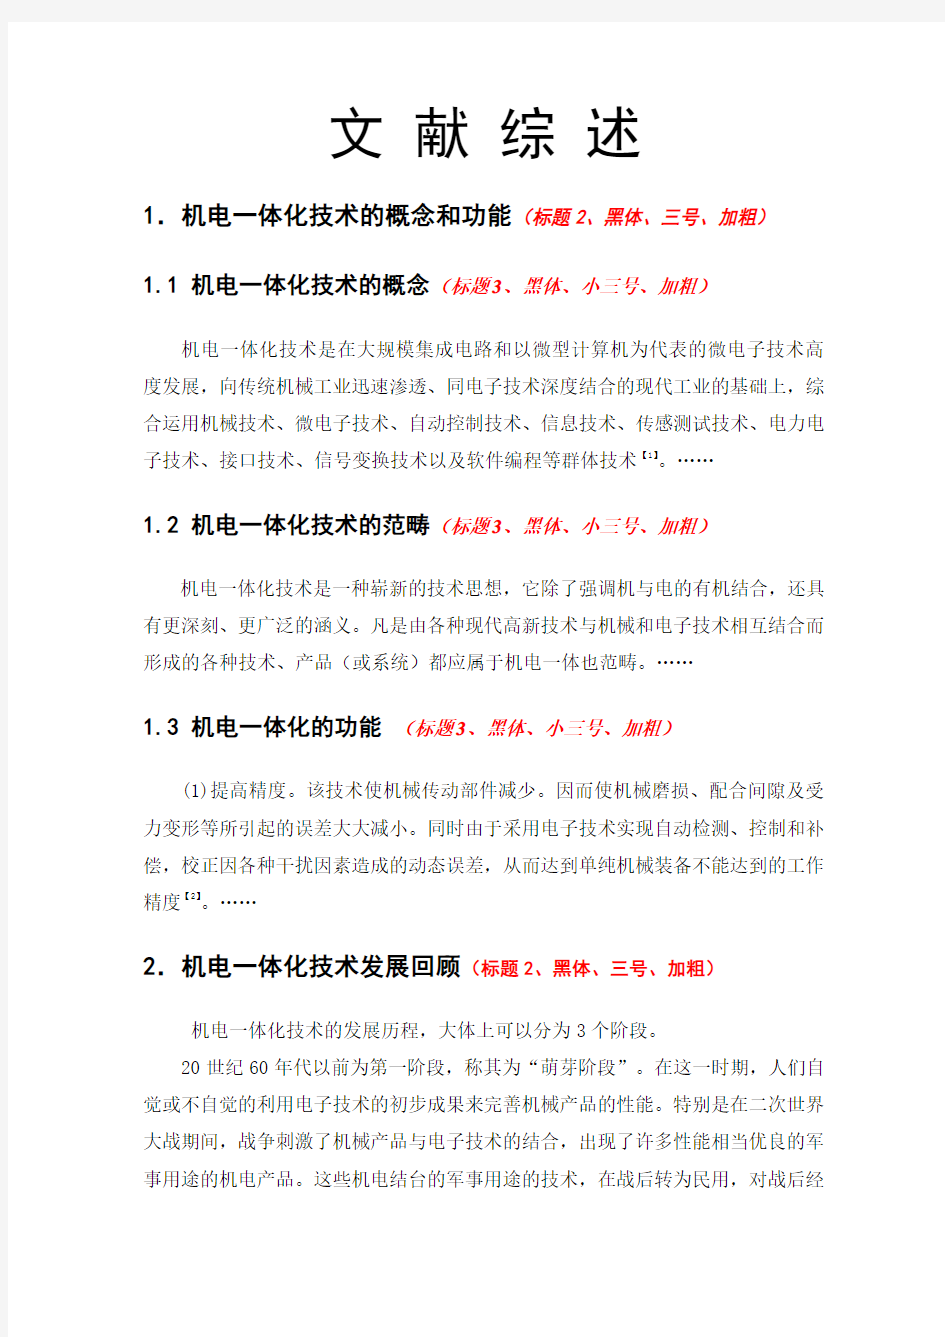 浙江大学机械工程学院文献综述、开题报告外文翻译的内容正文的格式范